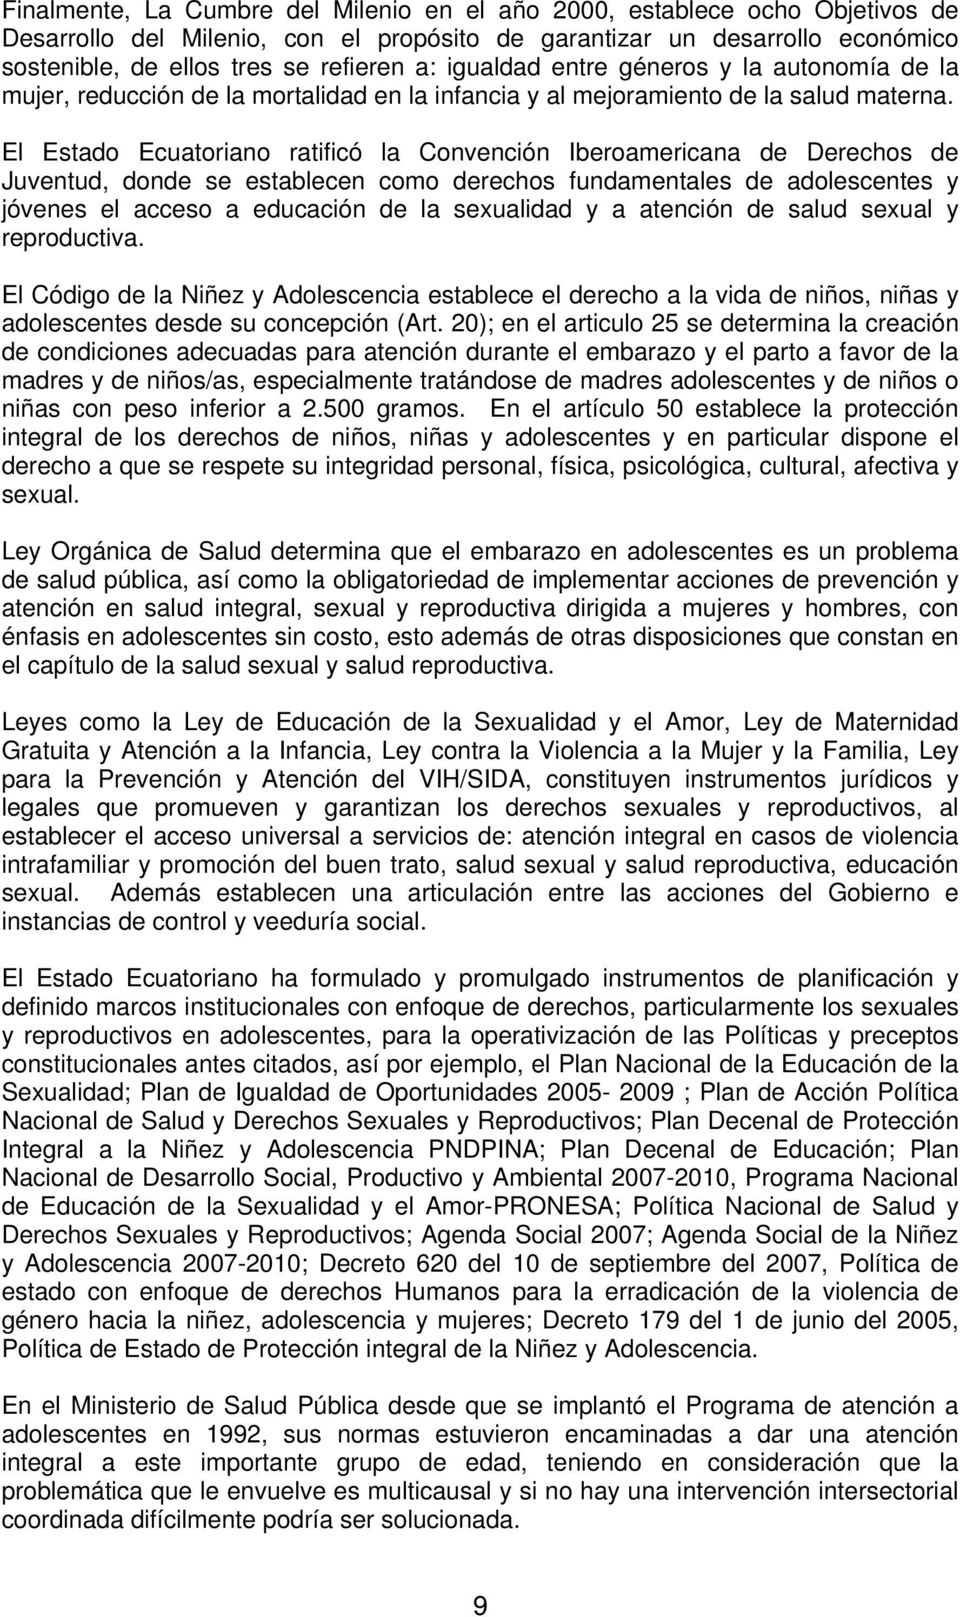 El Estado Ecuatoriano ratificó la Convención Iberoamericana de Derechos de Juventud, donde se establecen como derechos fundamentales de adolescentes y jóvenes el acceso a educación de la sexualidad y